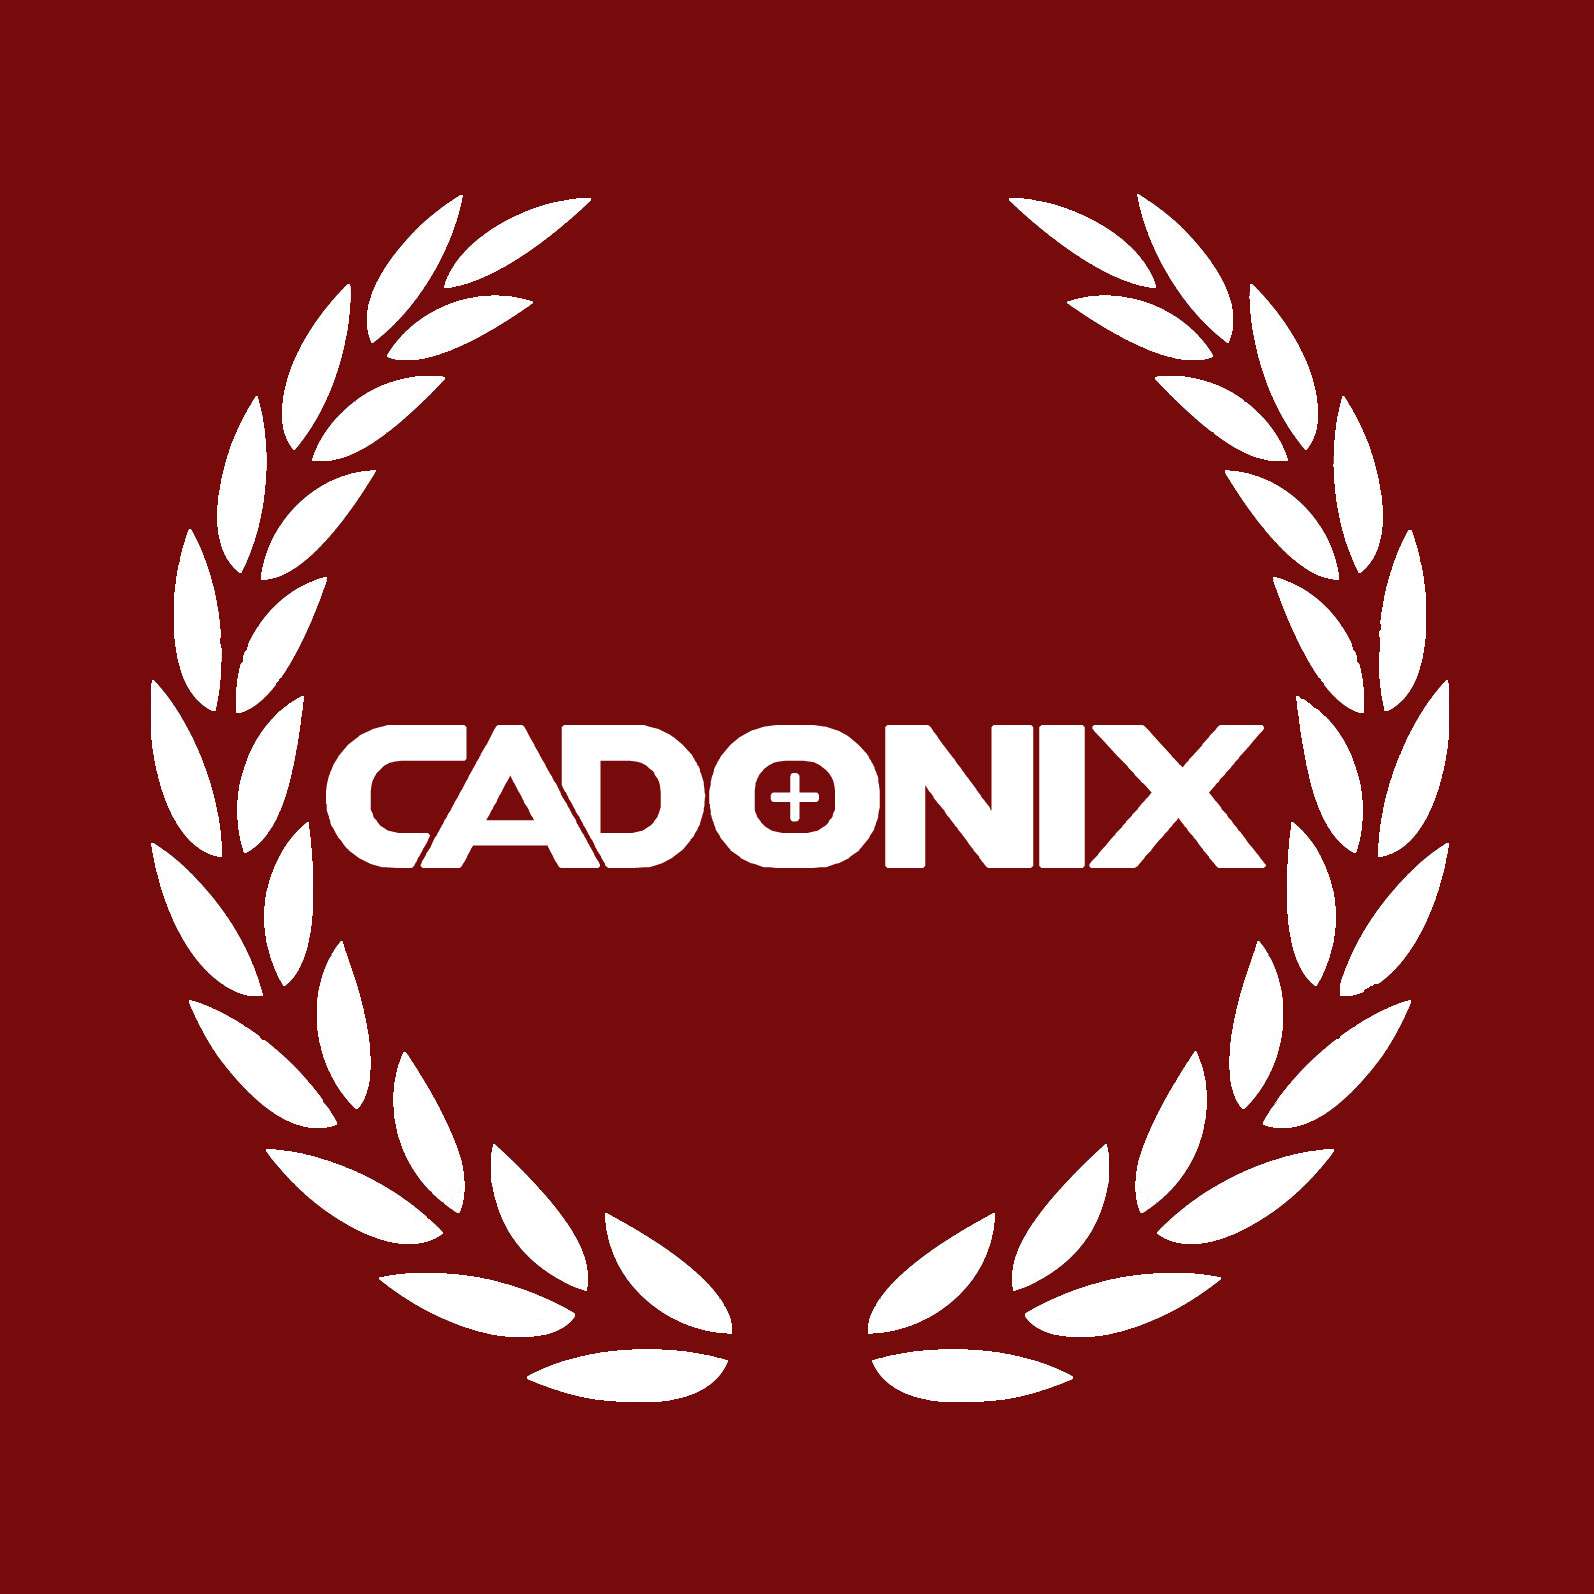 Cadonix